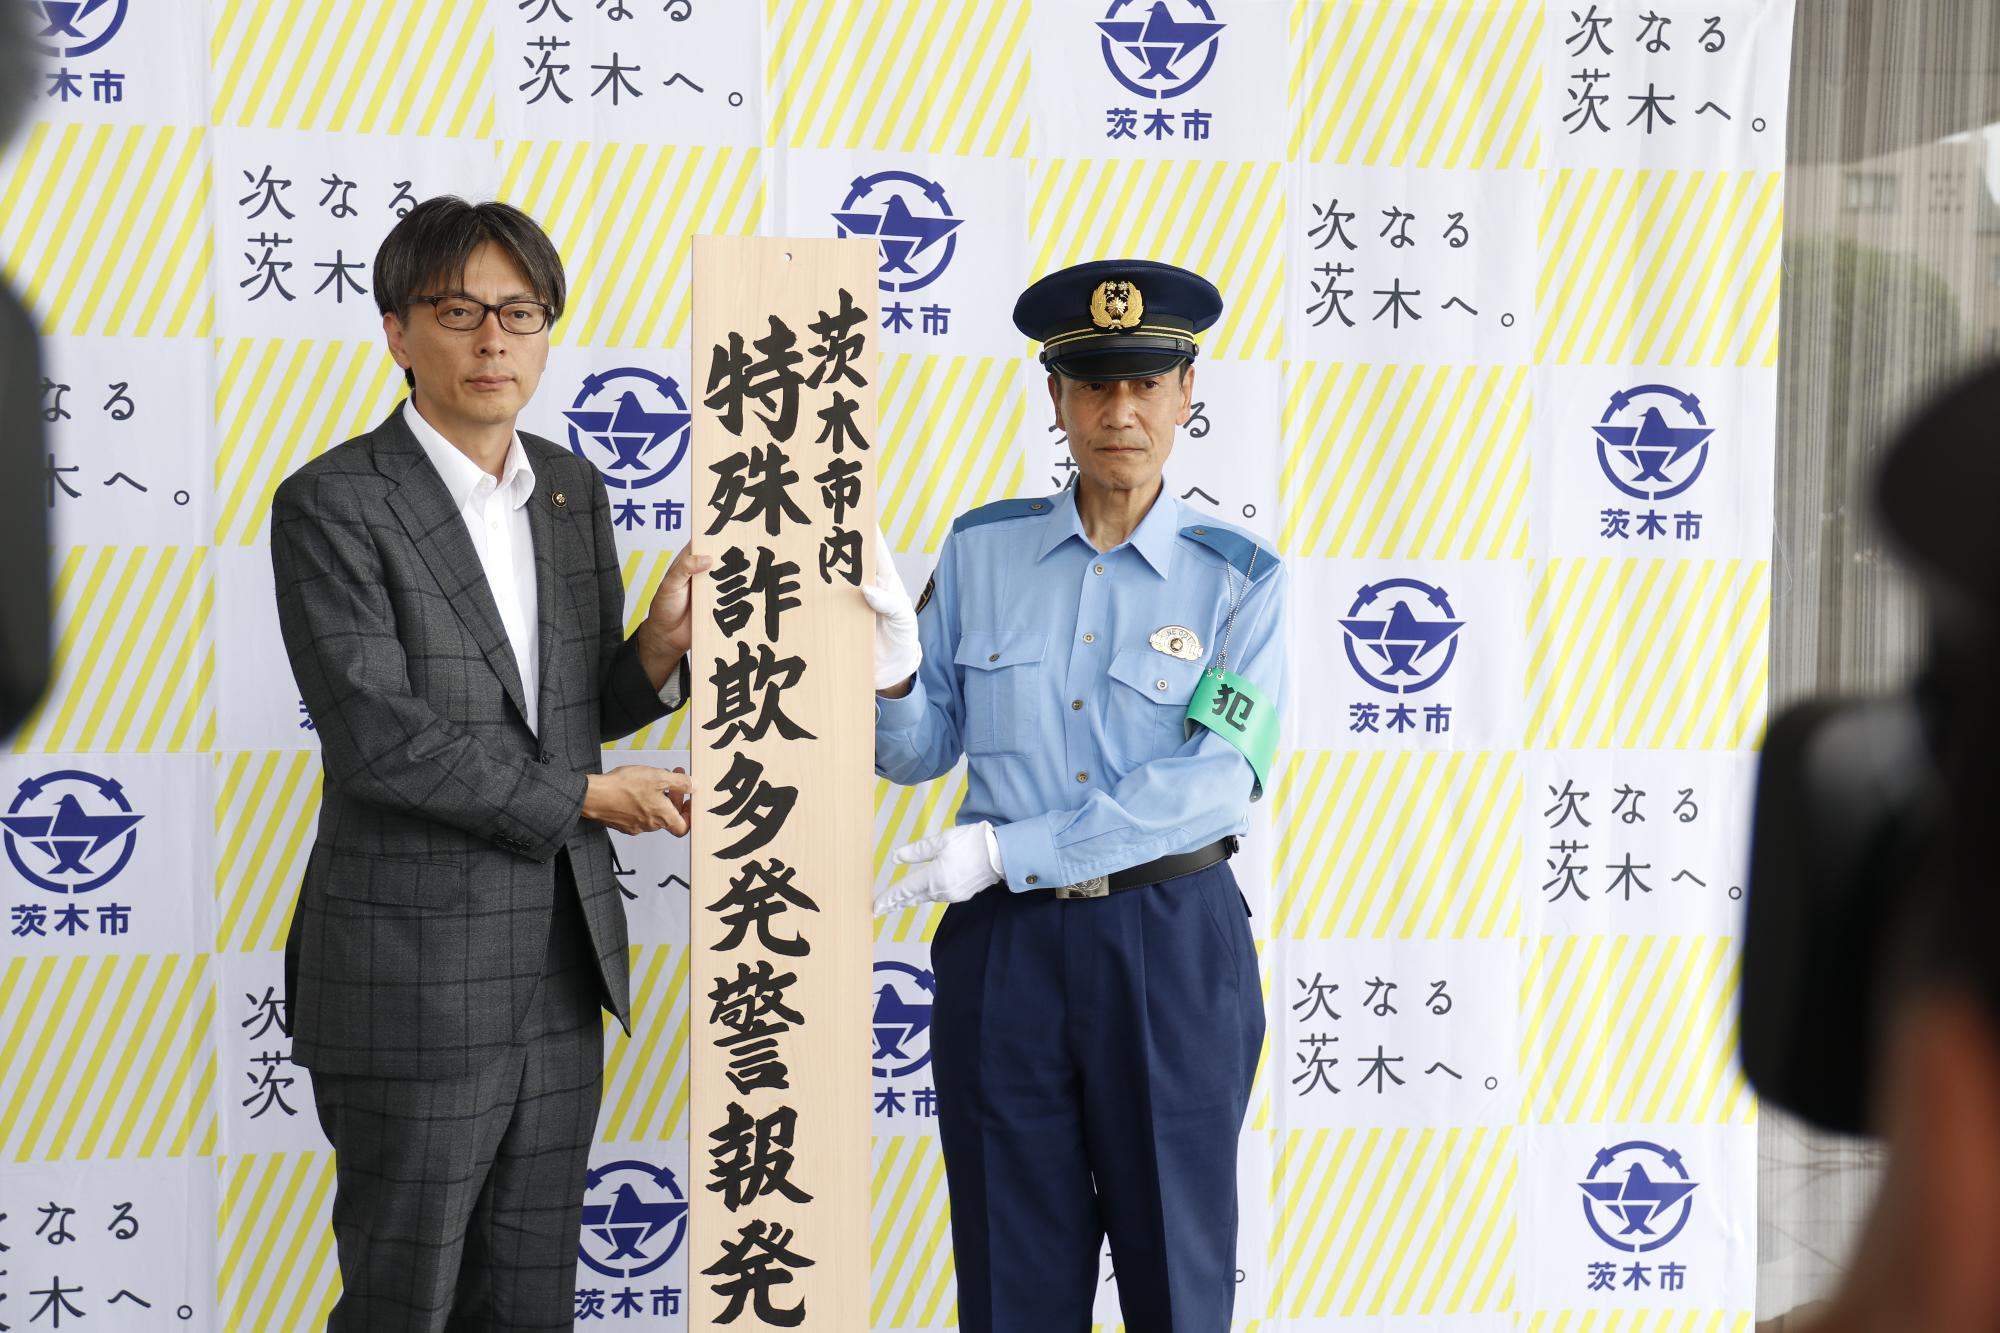 茨木警察署長と茨木市特殊詐欺多発警報発令の看板を持つ市長の写真